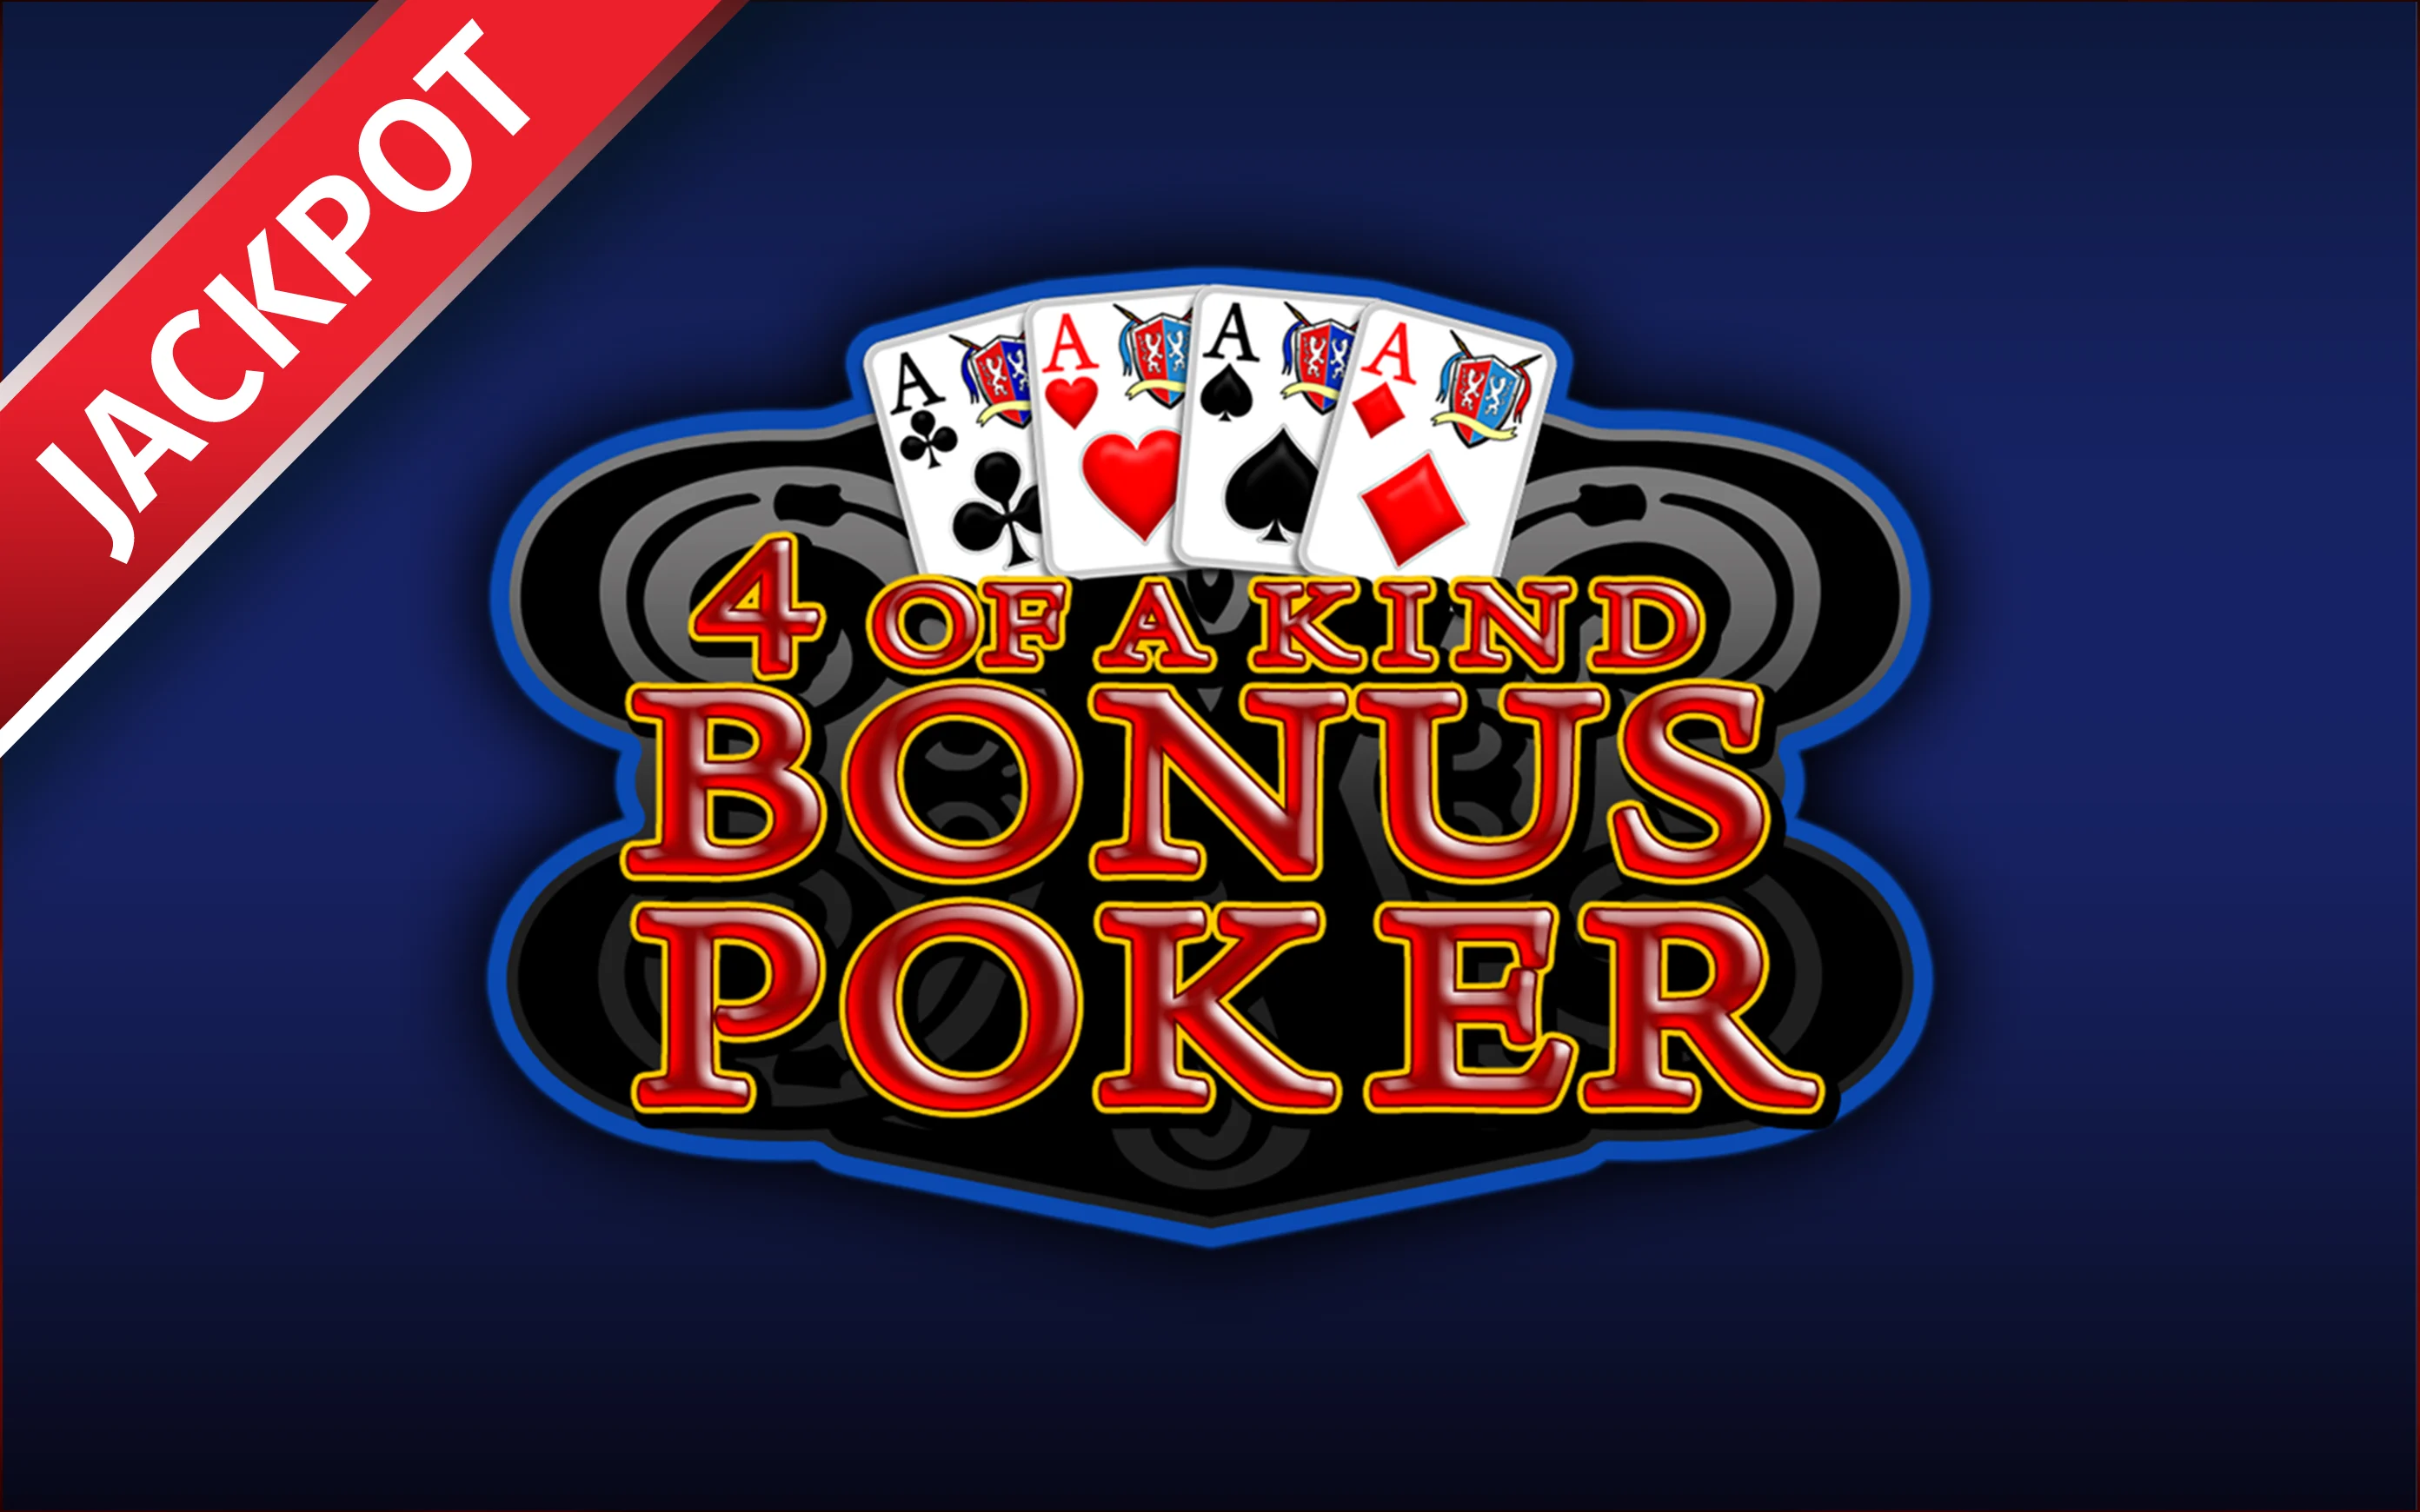 Chơi 4 of a kind Bonus Poker trên sòng bạc trực tuyến Starcasino.be